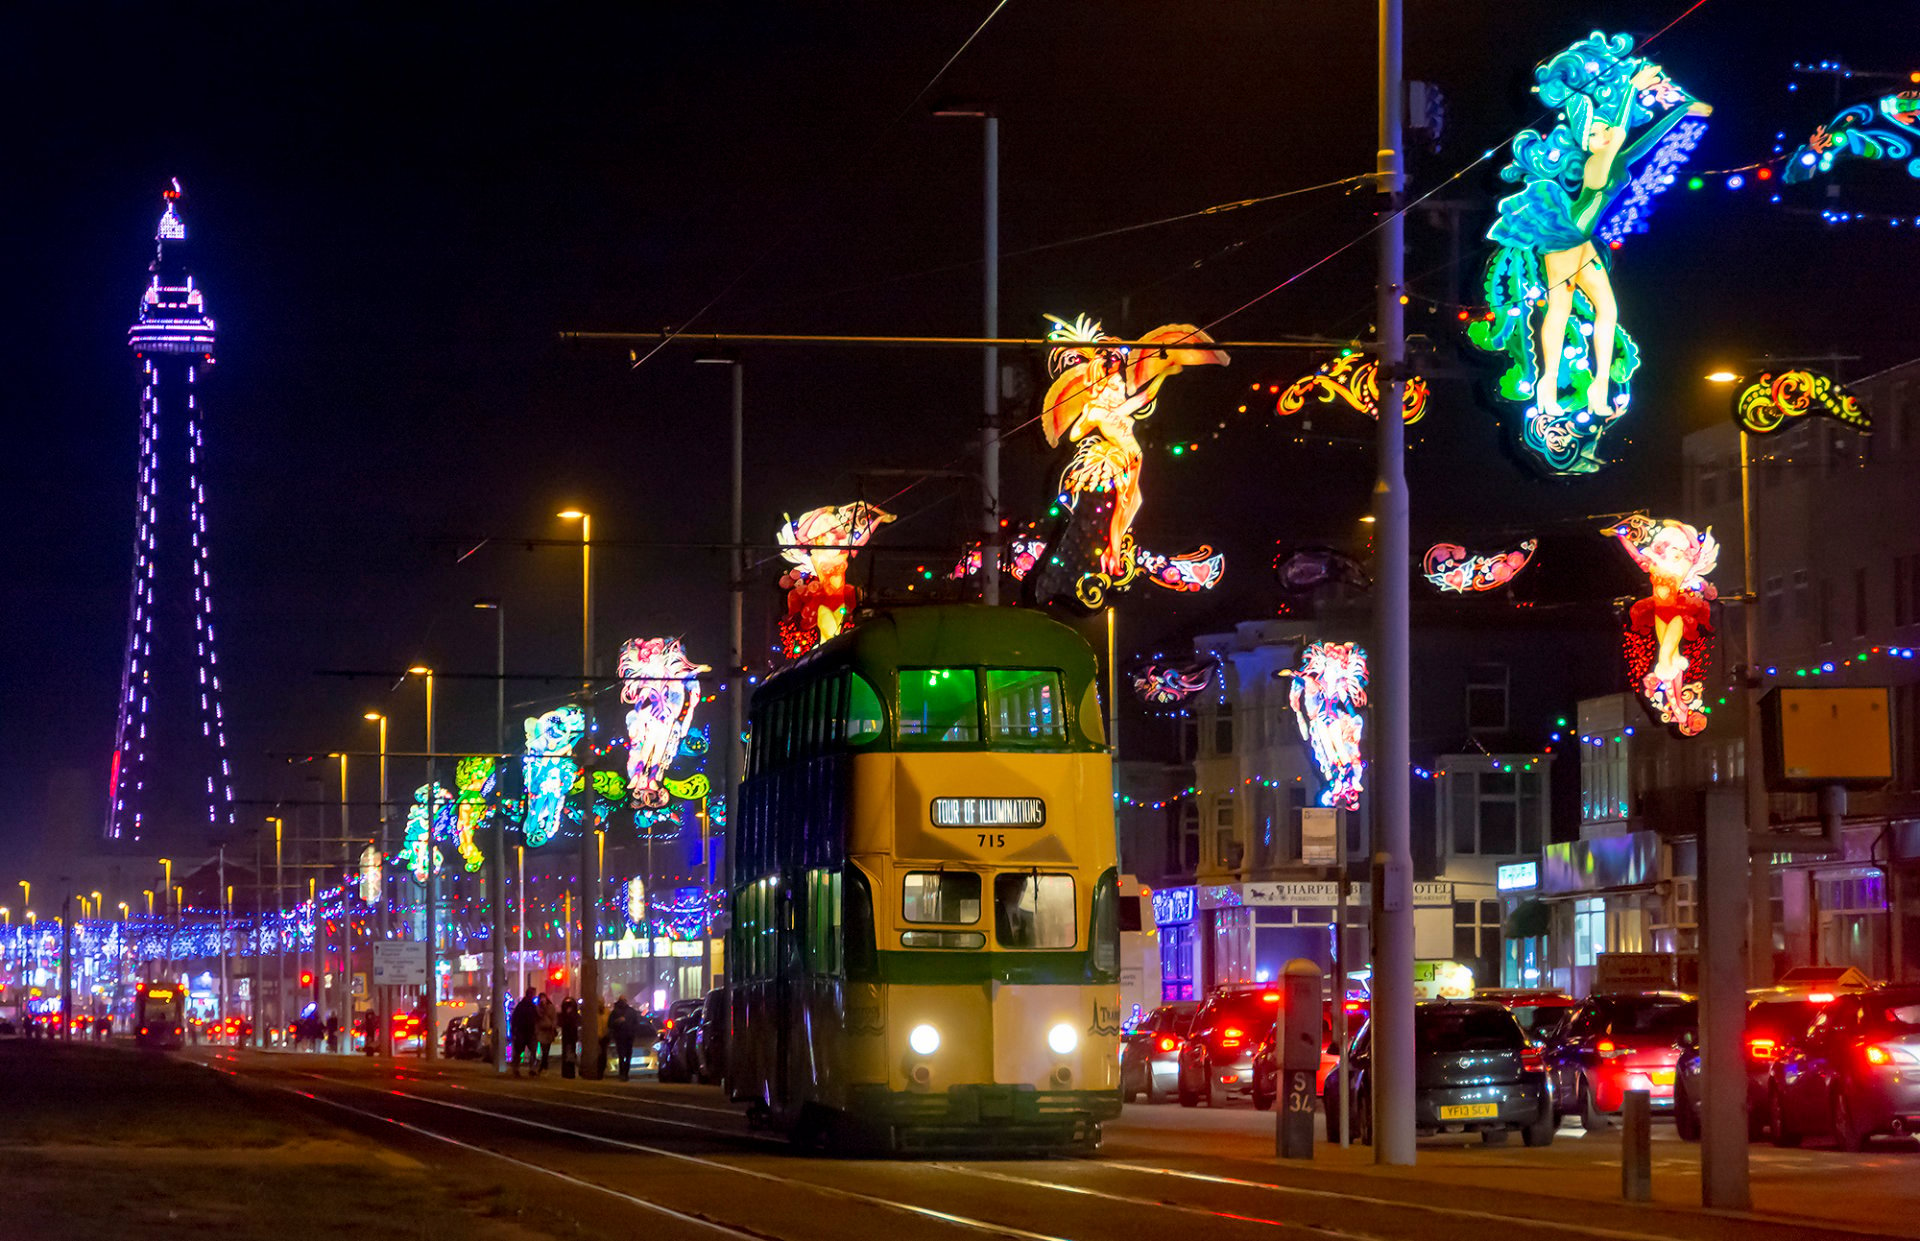 Iluminações Blackpool